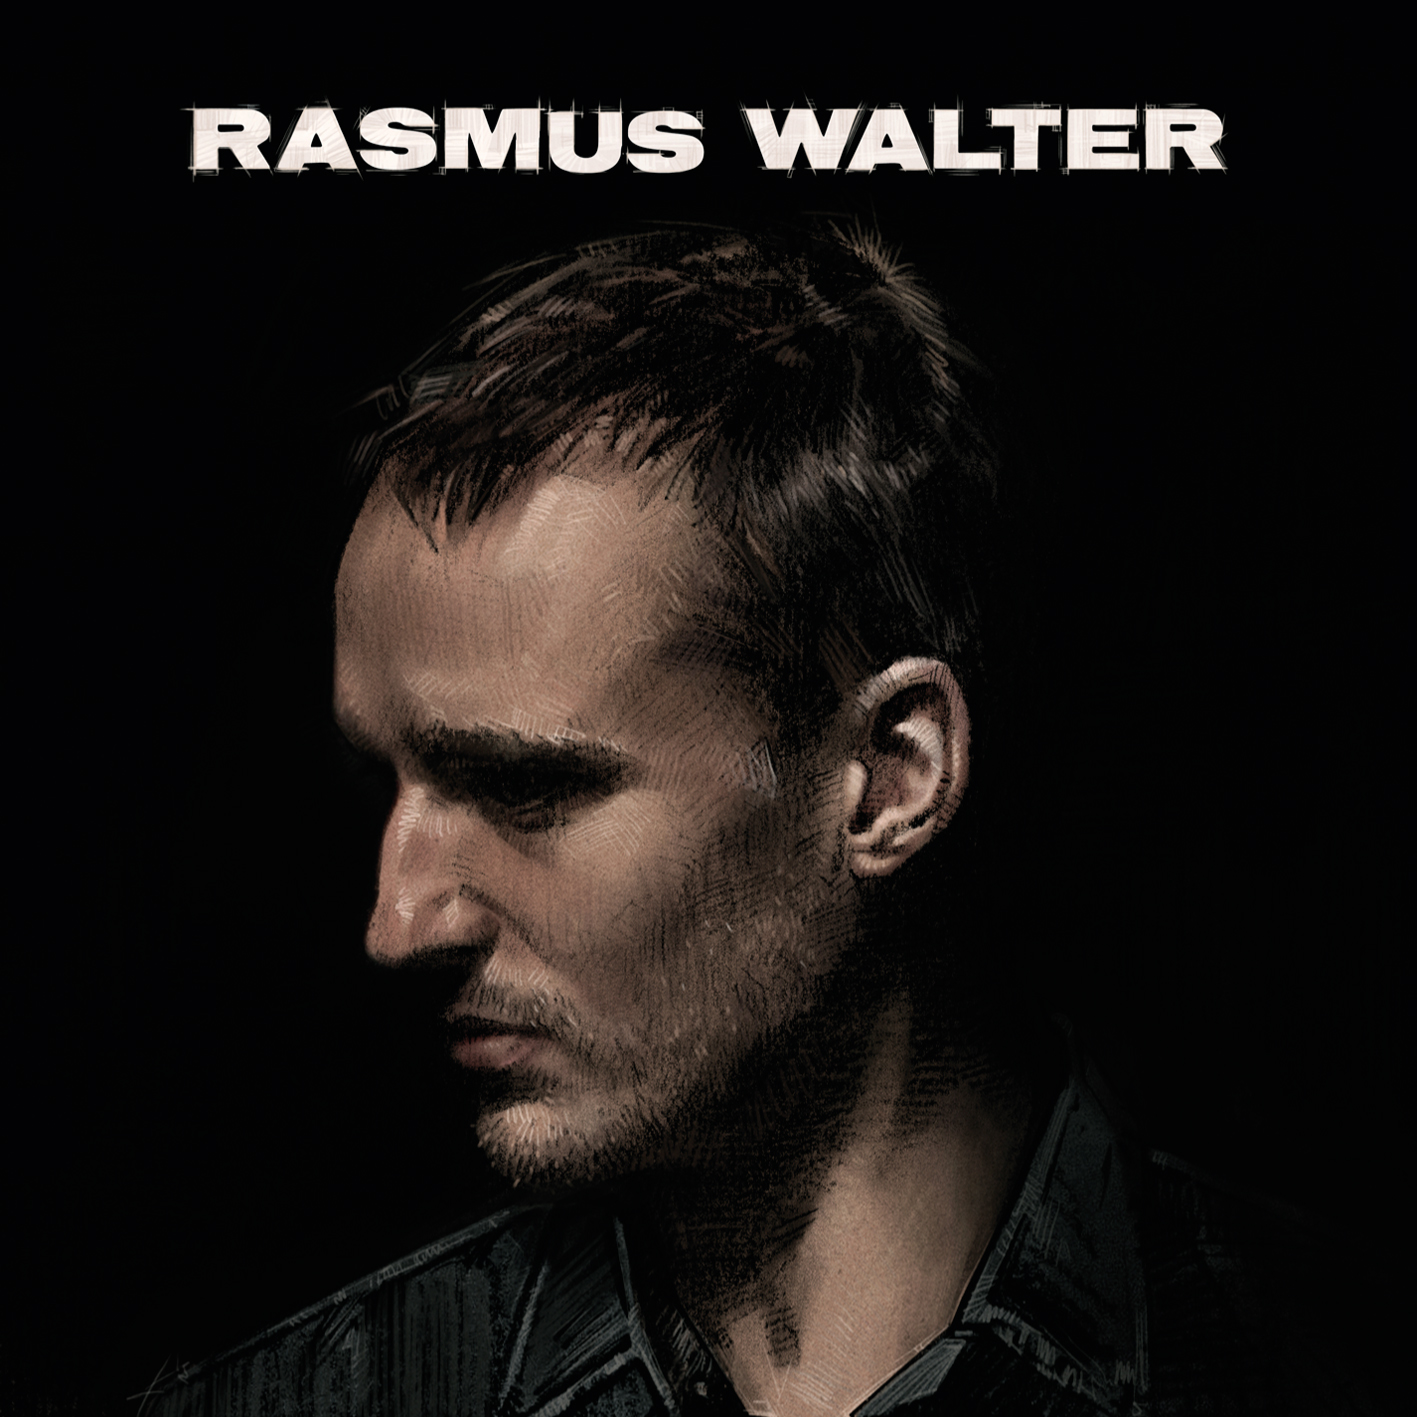 Rasmus Walter - Rasmus Walter